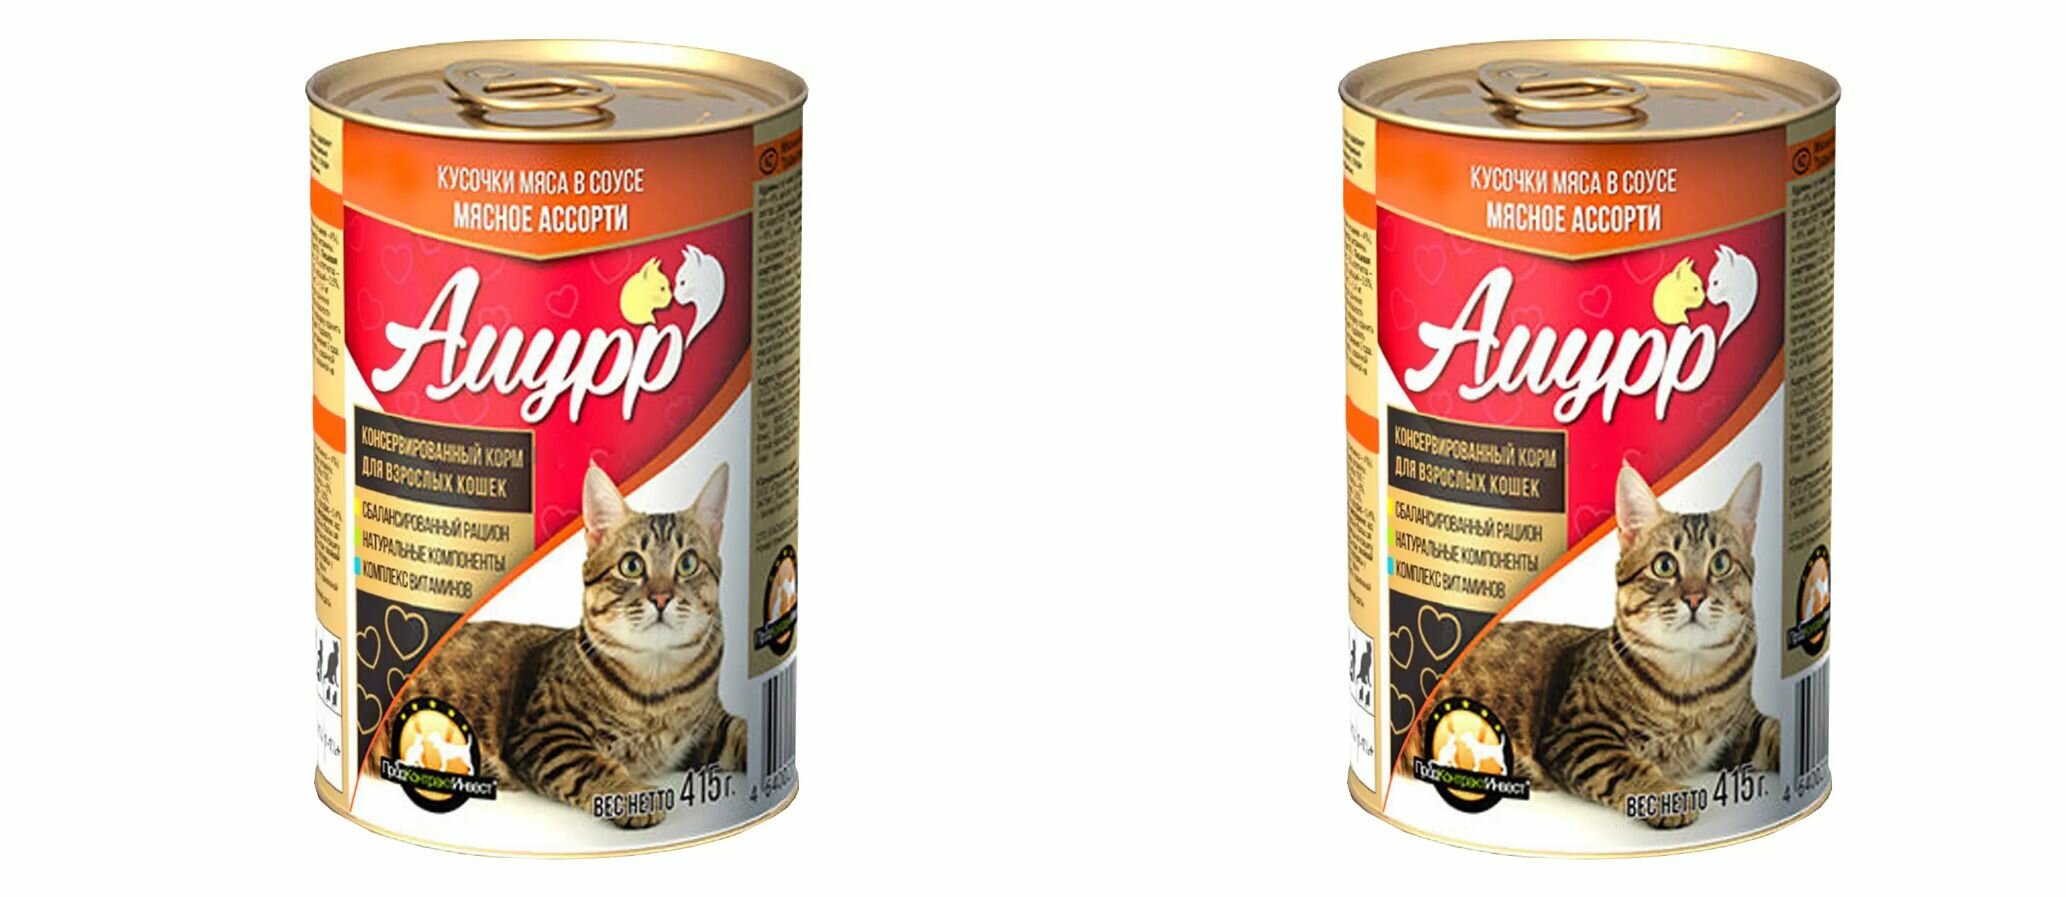 Амурр Консервы для кошек в соусе мясное ассорти, 415, 2 шт